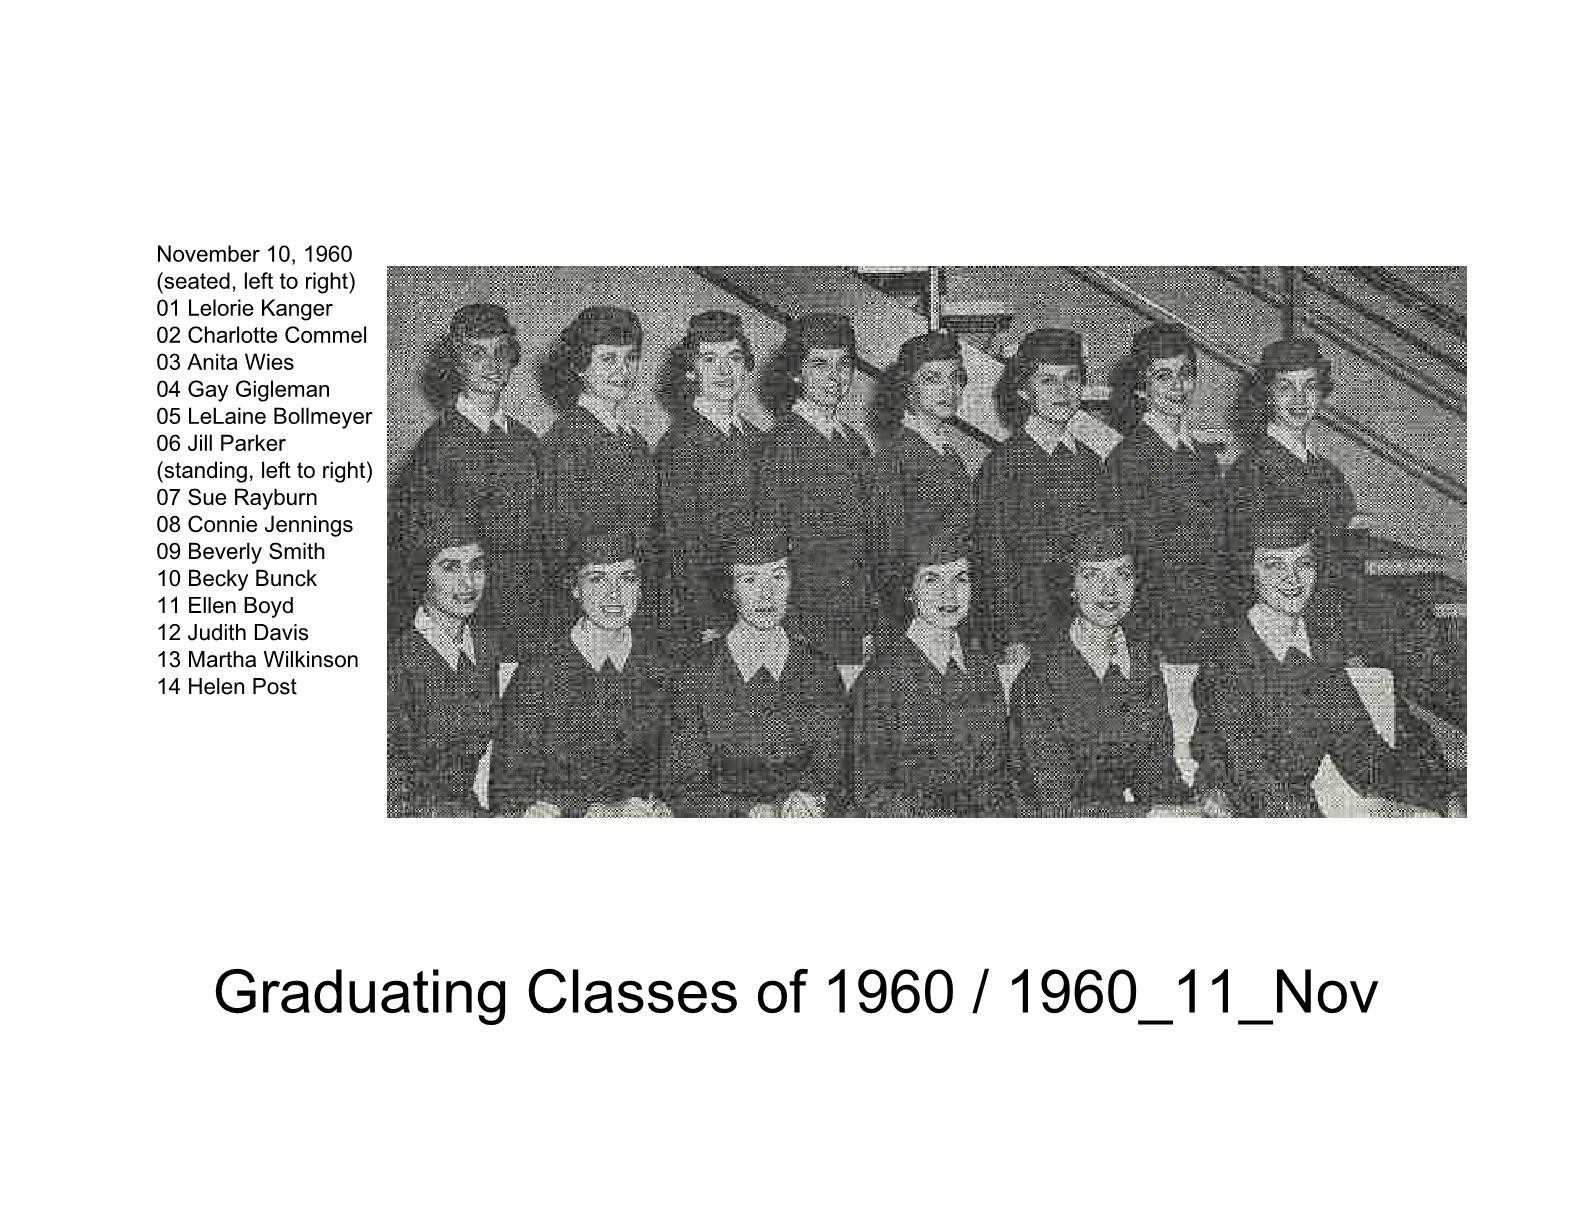 1960s classes